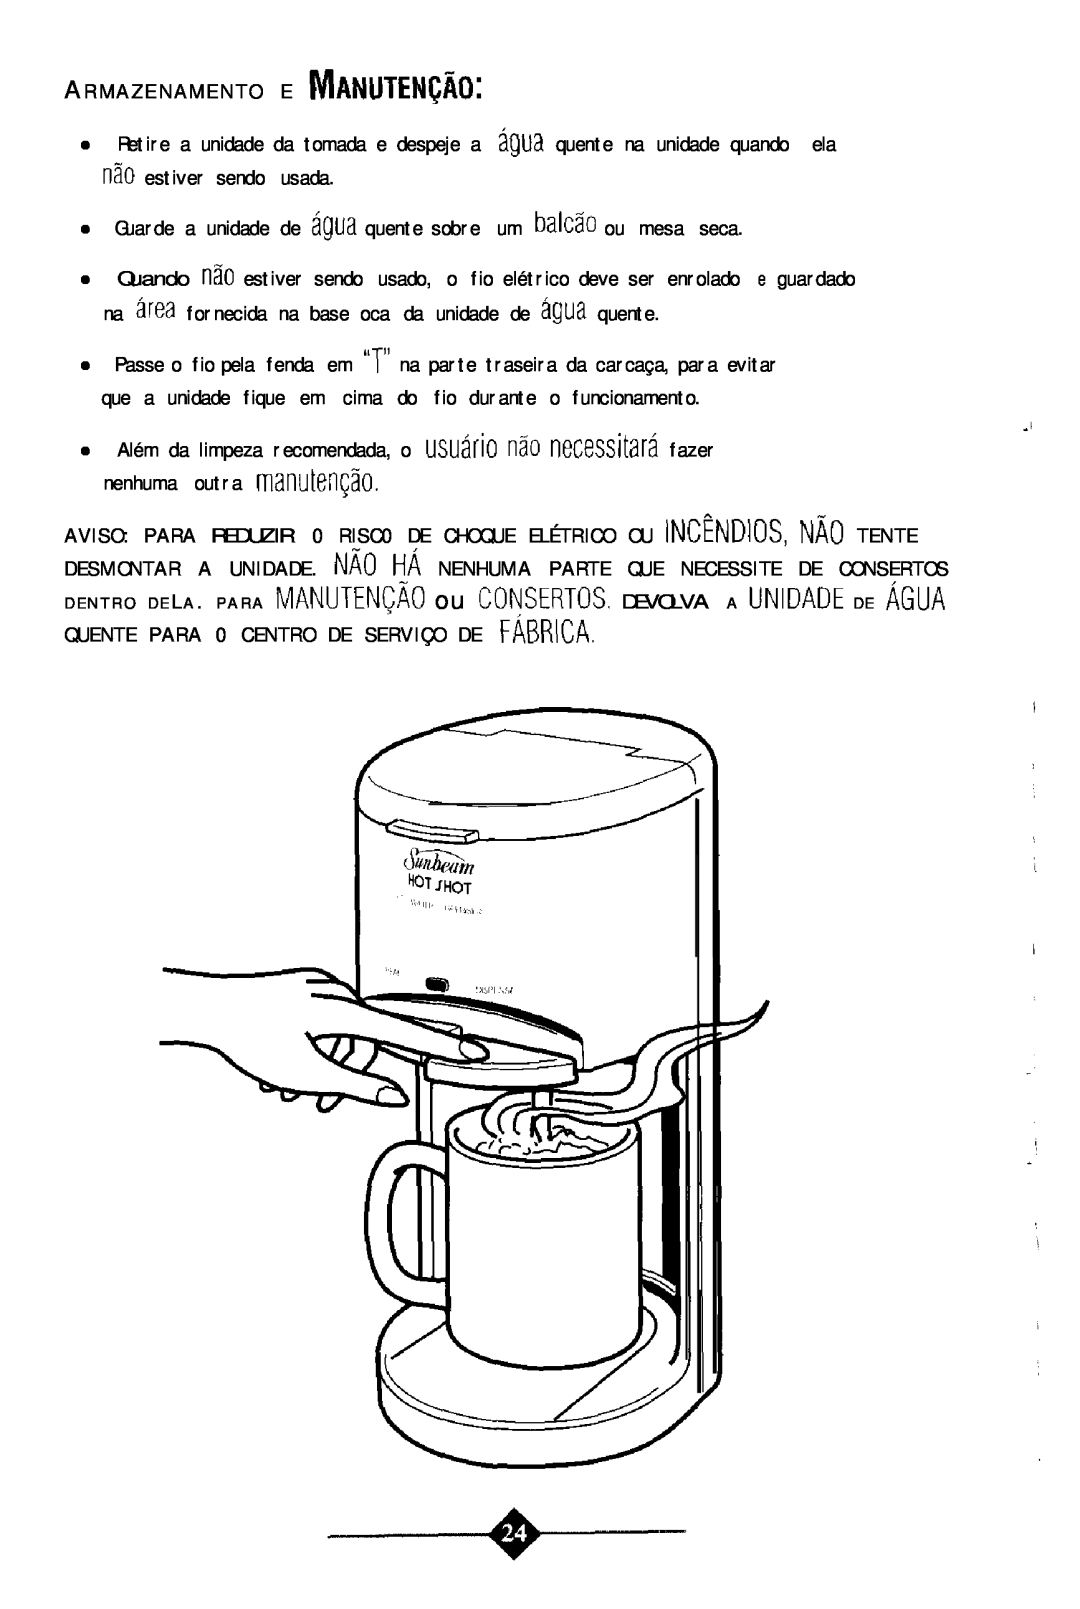 Sunbeam 3211 instruction manual Guarde a unidade de agua quente sobre um balcao ou mesa seca 